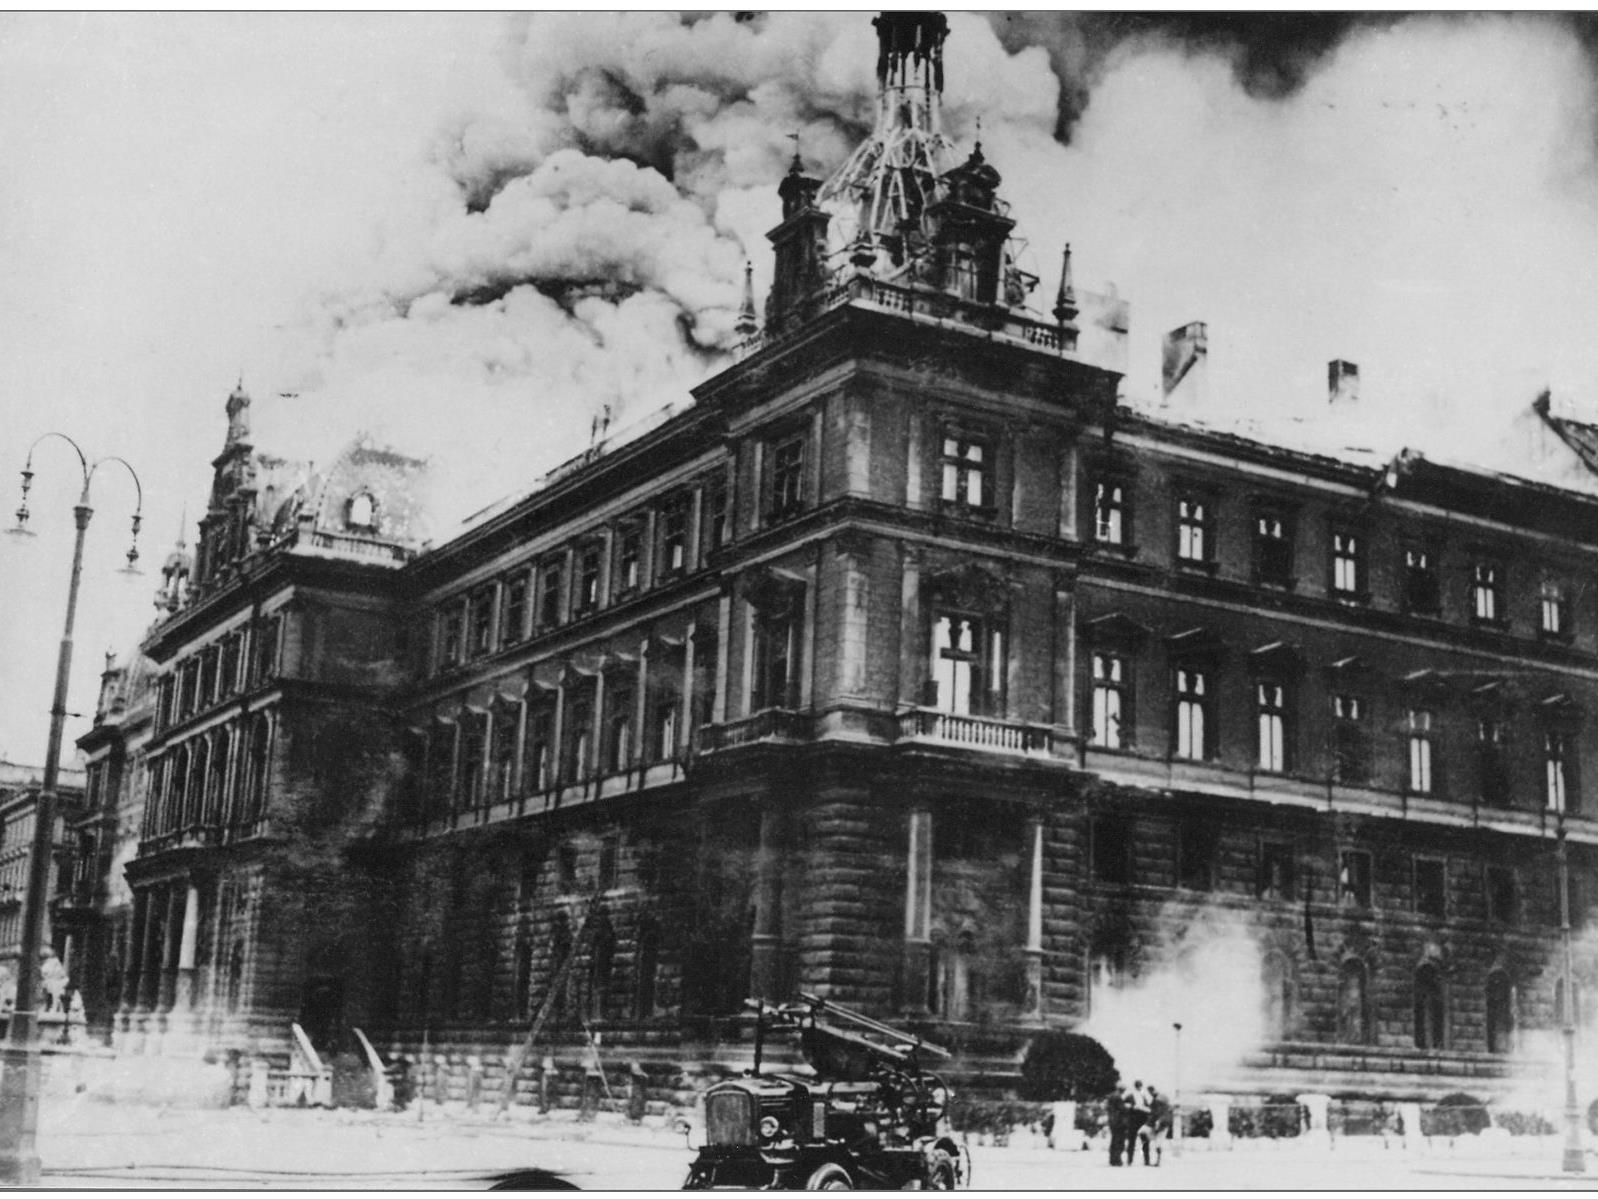 Am 15. Juli 1927 legten Arbeiter ein Feuer im Wiener Justizpalast.